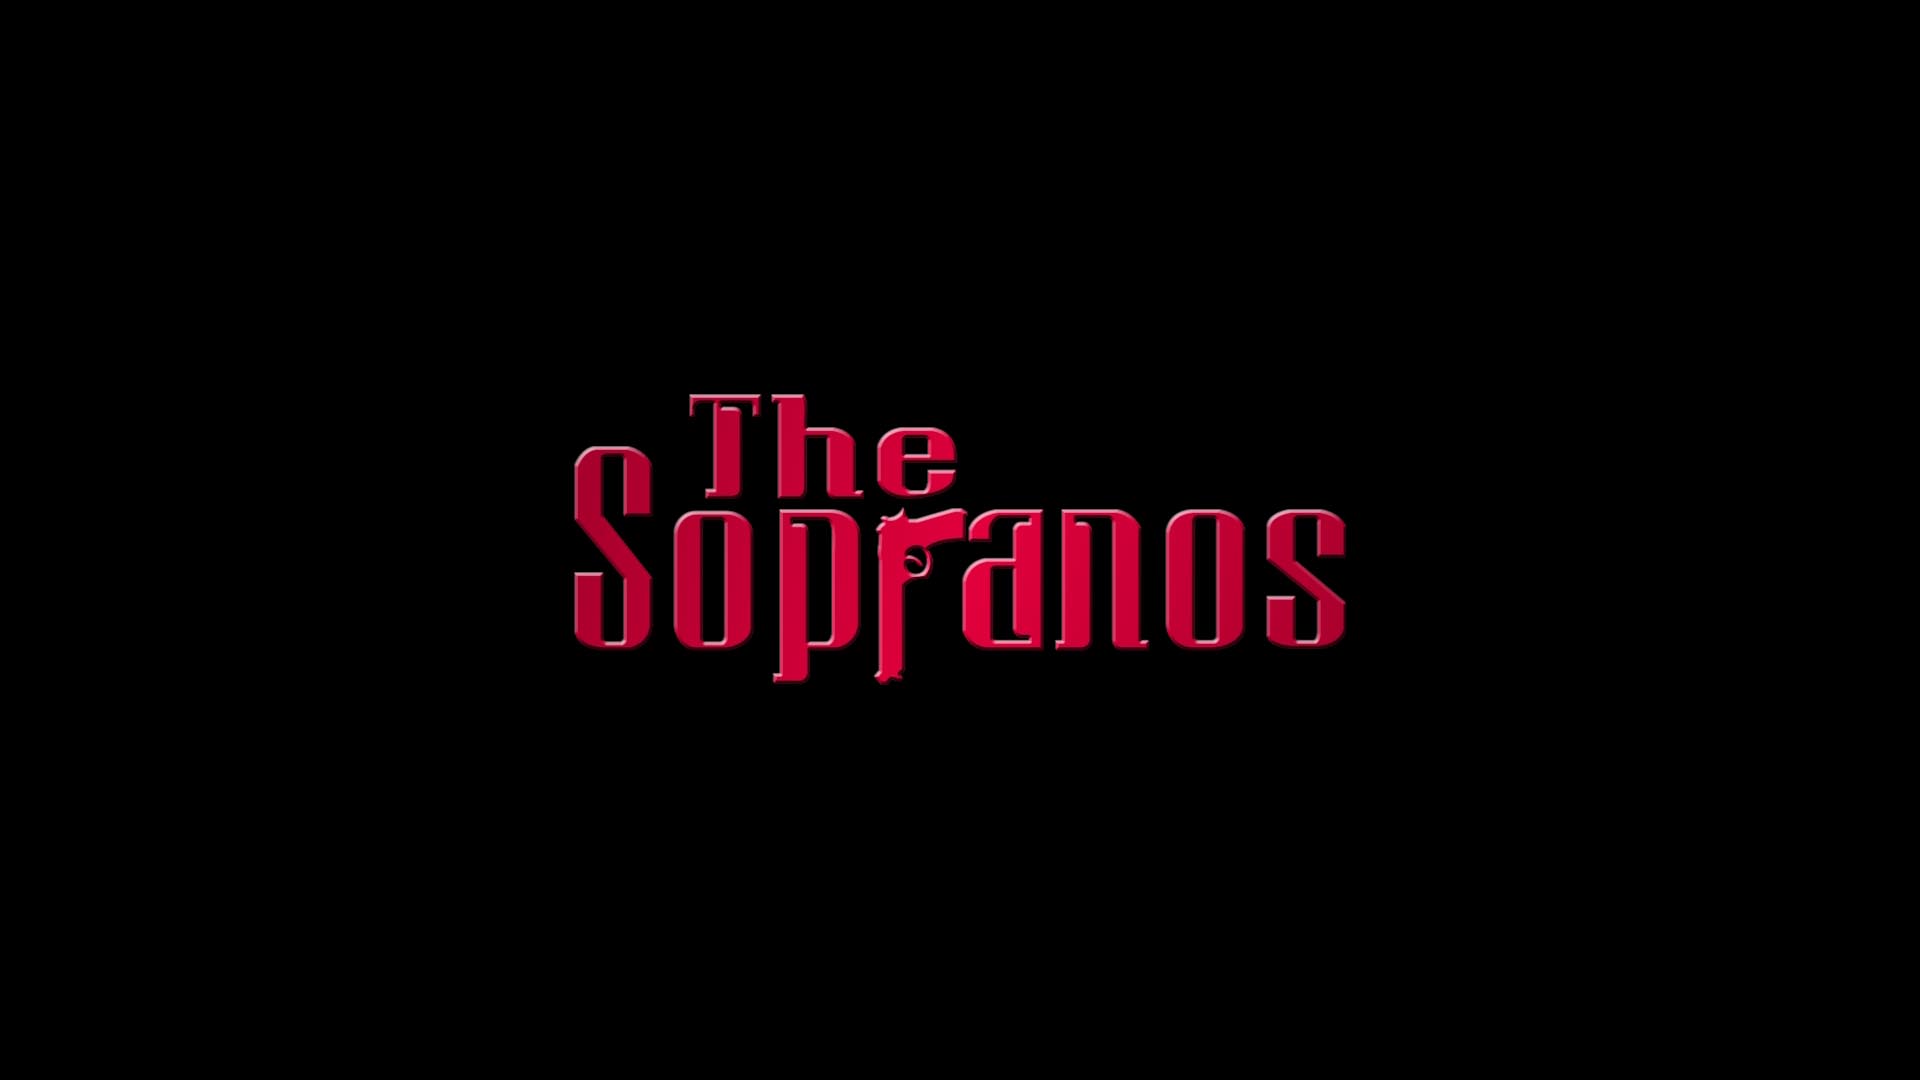 the sopranos, tv show